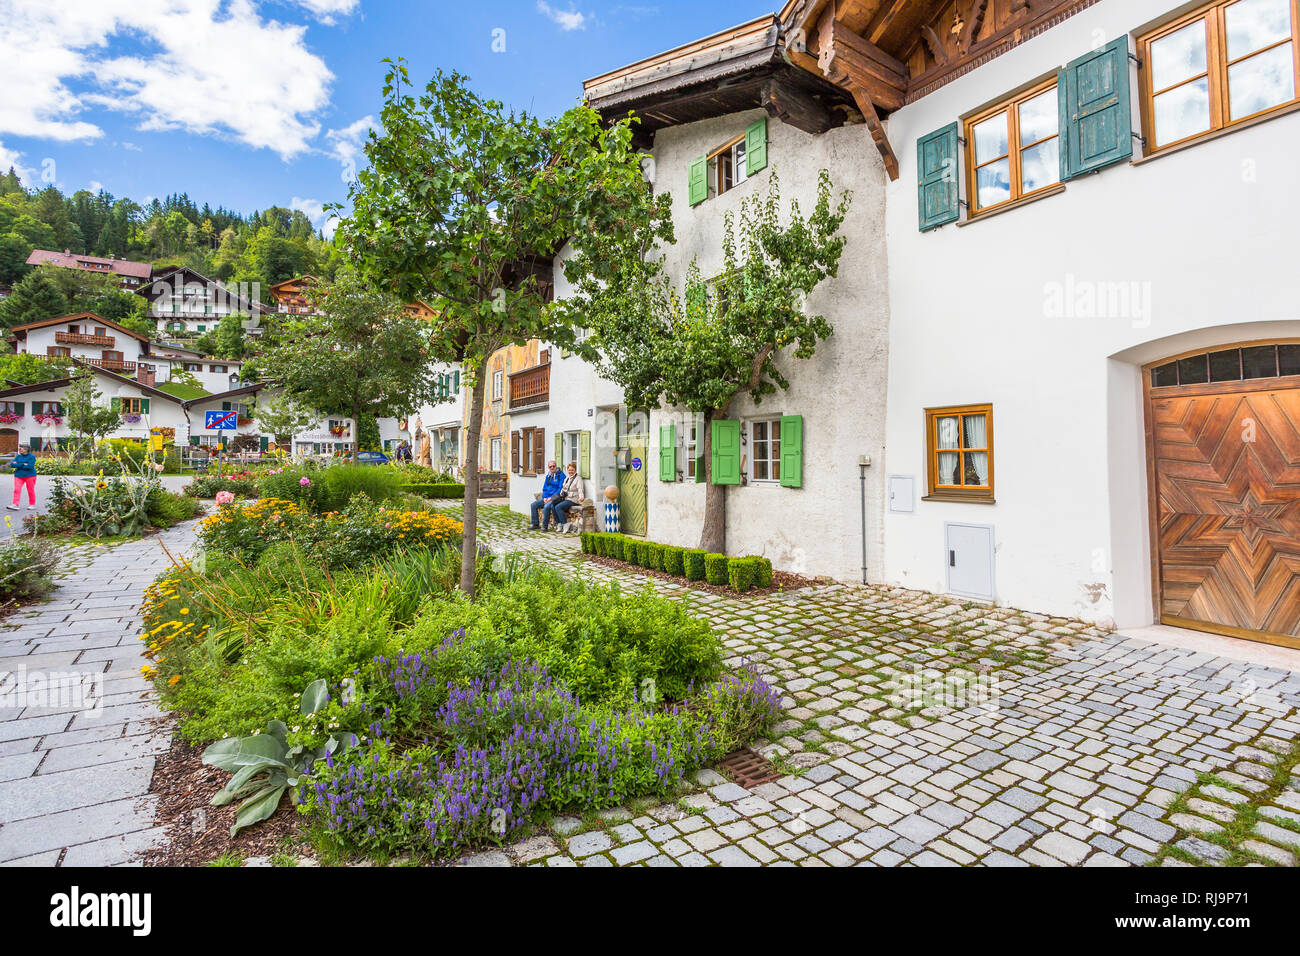 Hausfassaden mit Lüftlmalerei, Mittenwald, Werdenfelser Land, Oberbayern, Bayern, Deutschland, Europa Stock Photo